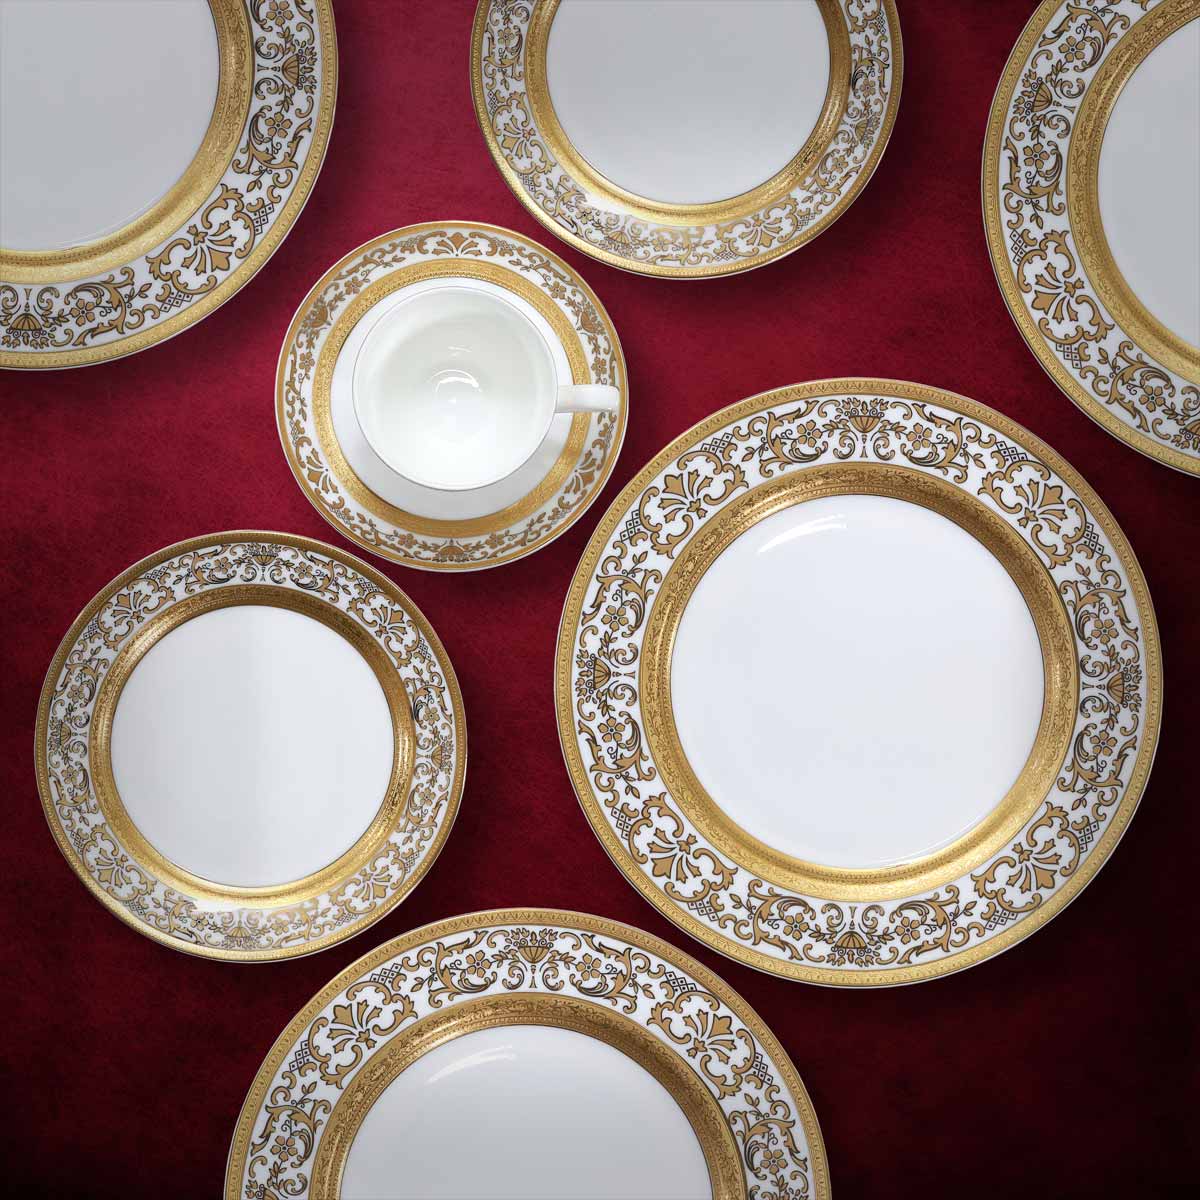 Servizio piatti tavola con importante decorazione in oro inciso in finissima porcellana - Prestige